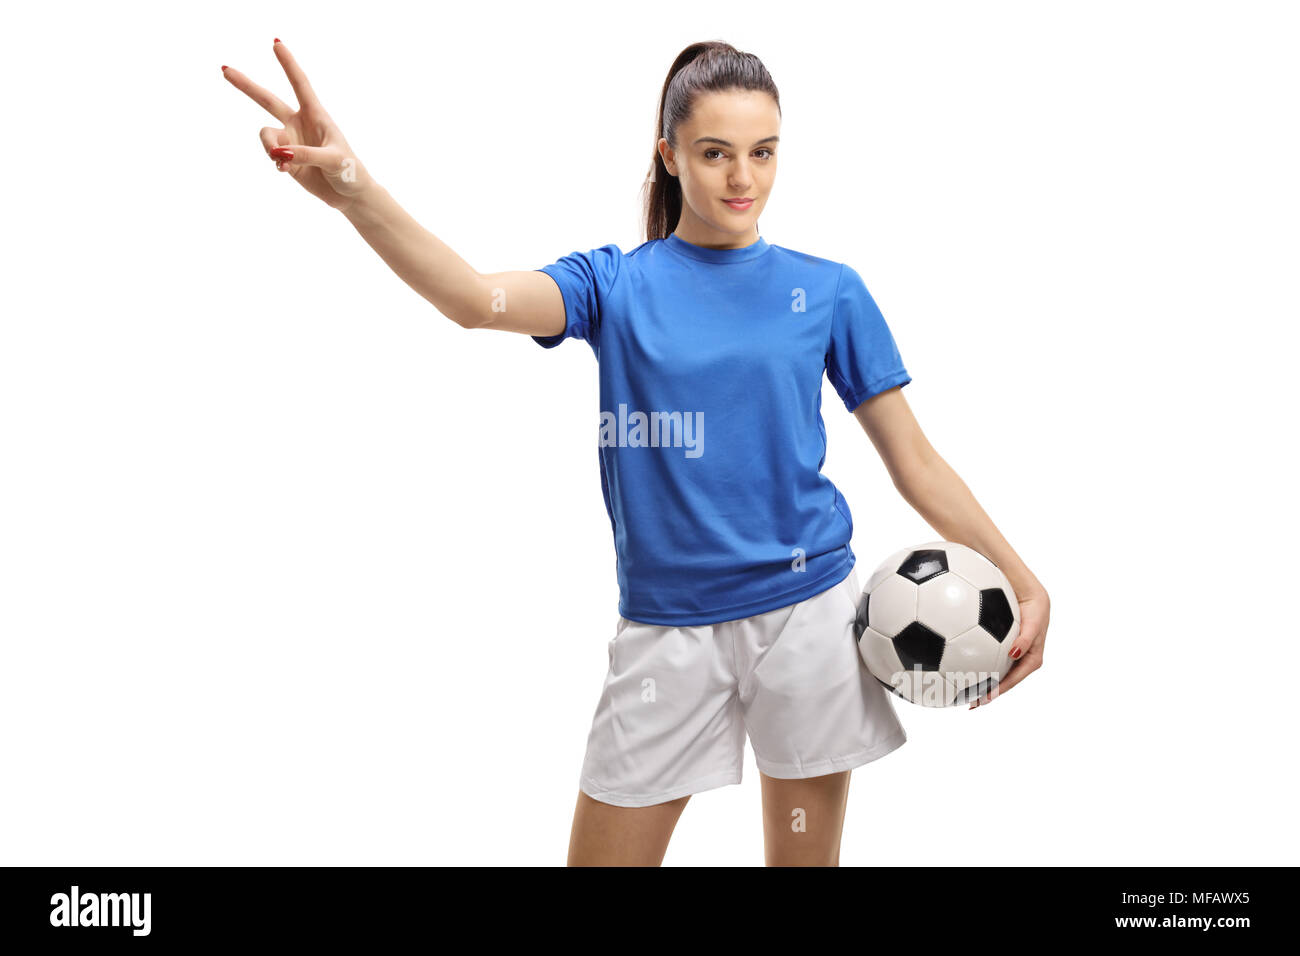 Calcio femminile player facendo una vittoria gesto isolato su sfondo bianco Foto Stock